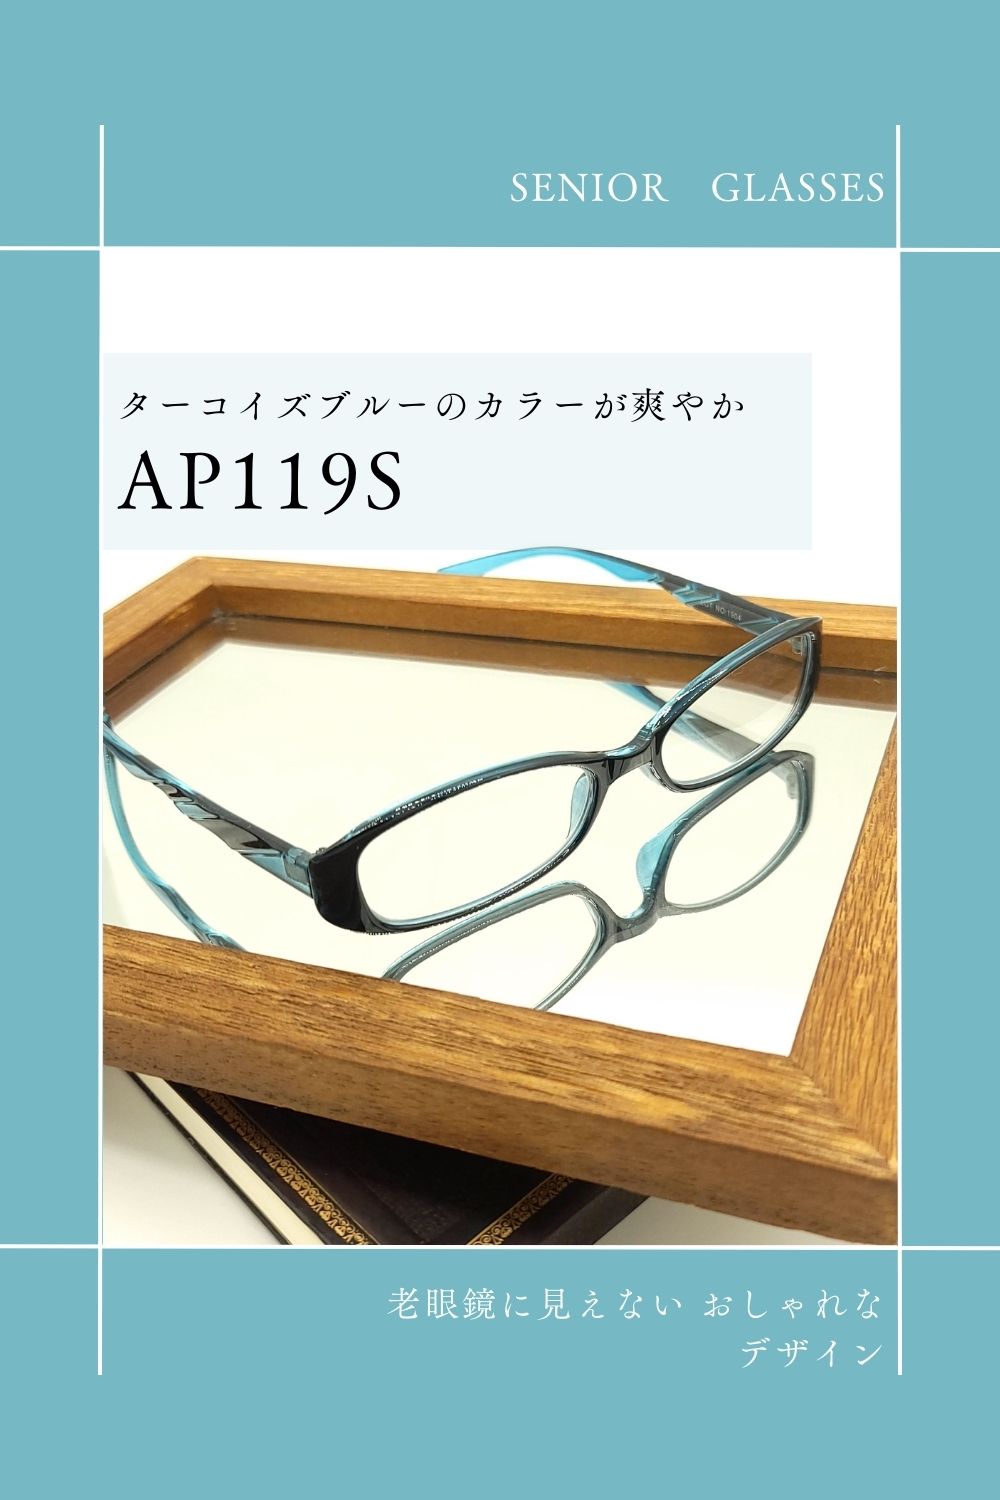 AP119S | AILEオリジナルブランド シニアグラスラインナップ | 有限会社エール